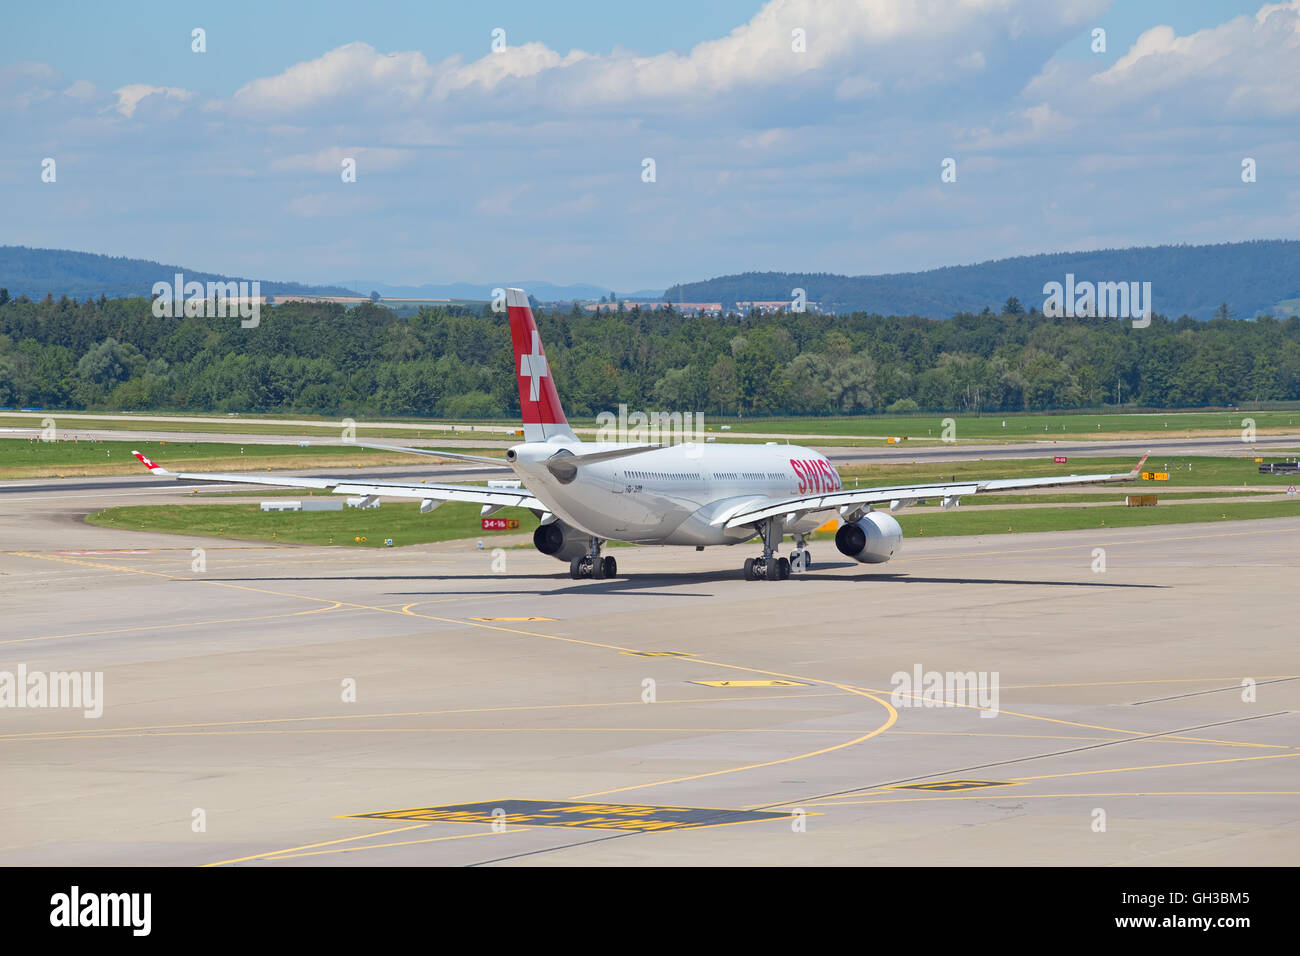 ZURICH - July 30:  Planes preparing for take off at Terminal A of Zurich Airport on July 30, 2016 in Zurich, Switzerland. Zurich Stock Photo